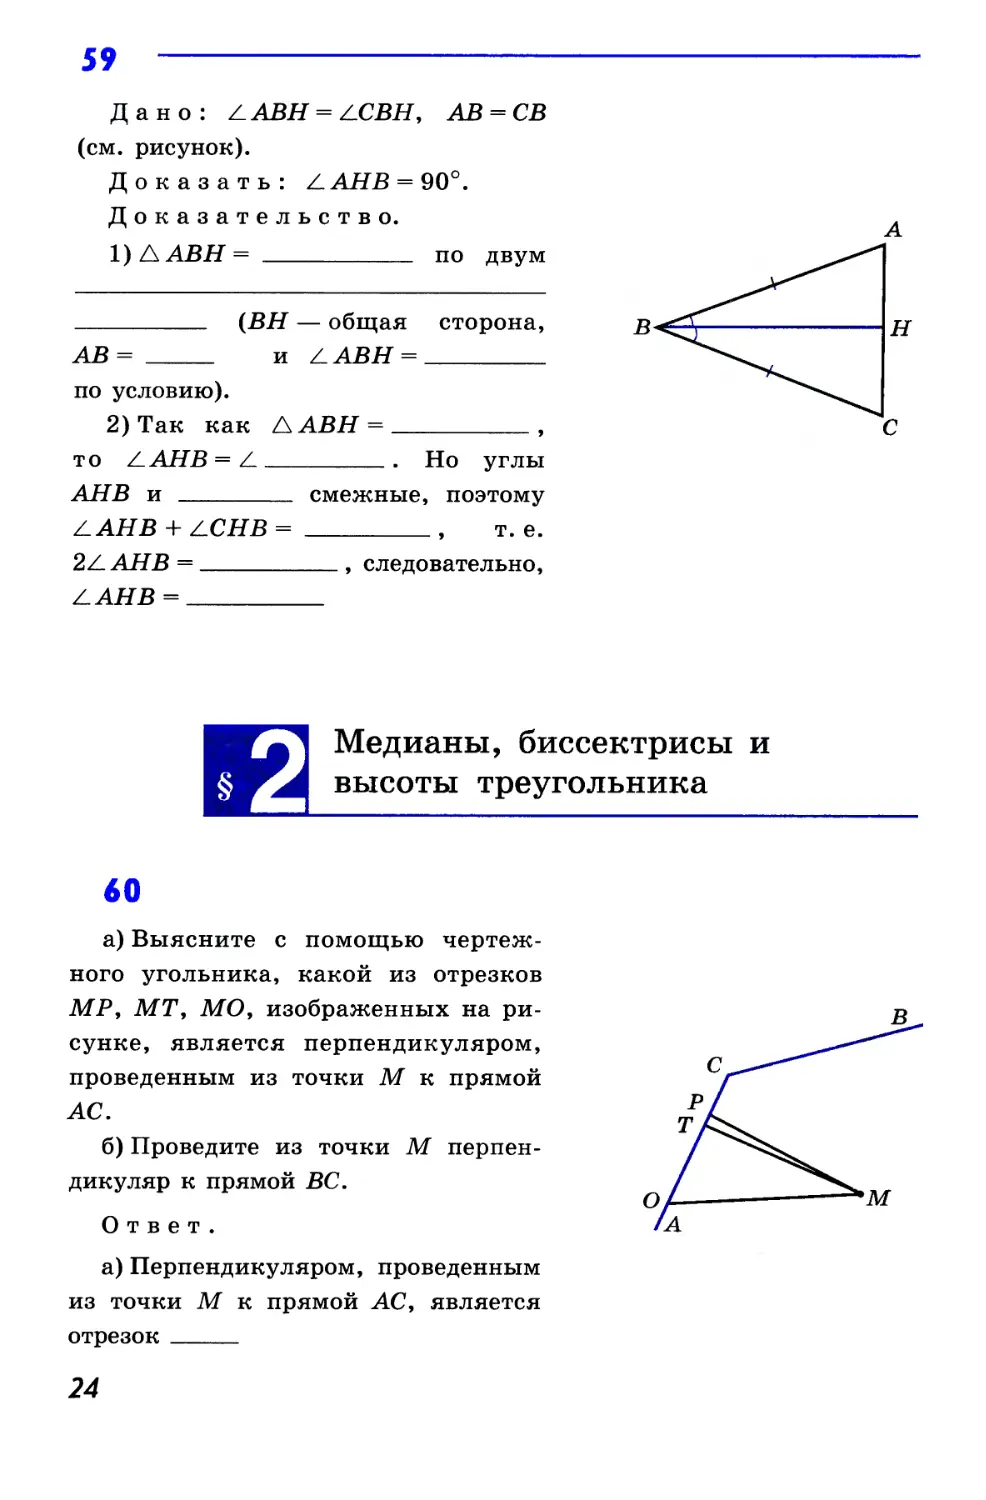 §2. Медианы, биссектрисы и высоты треугольника